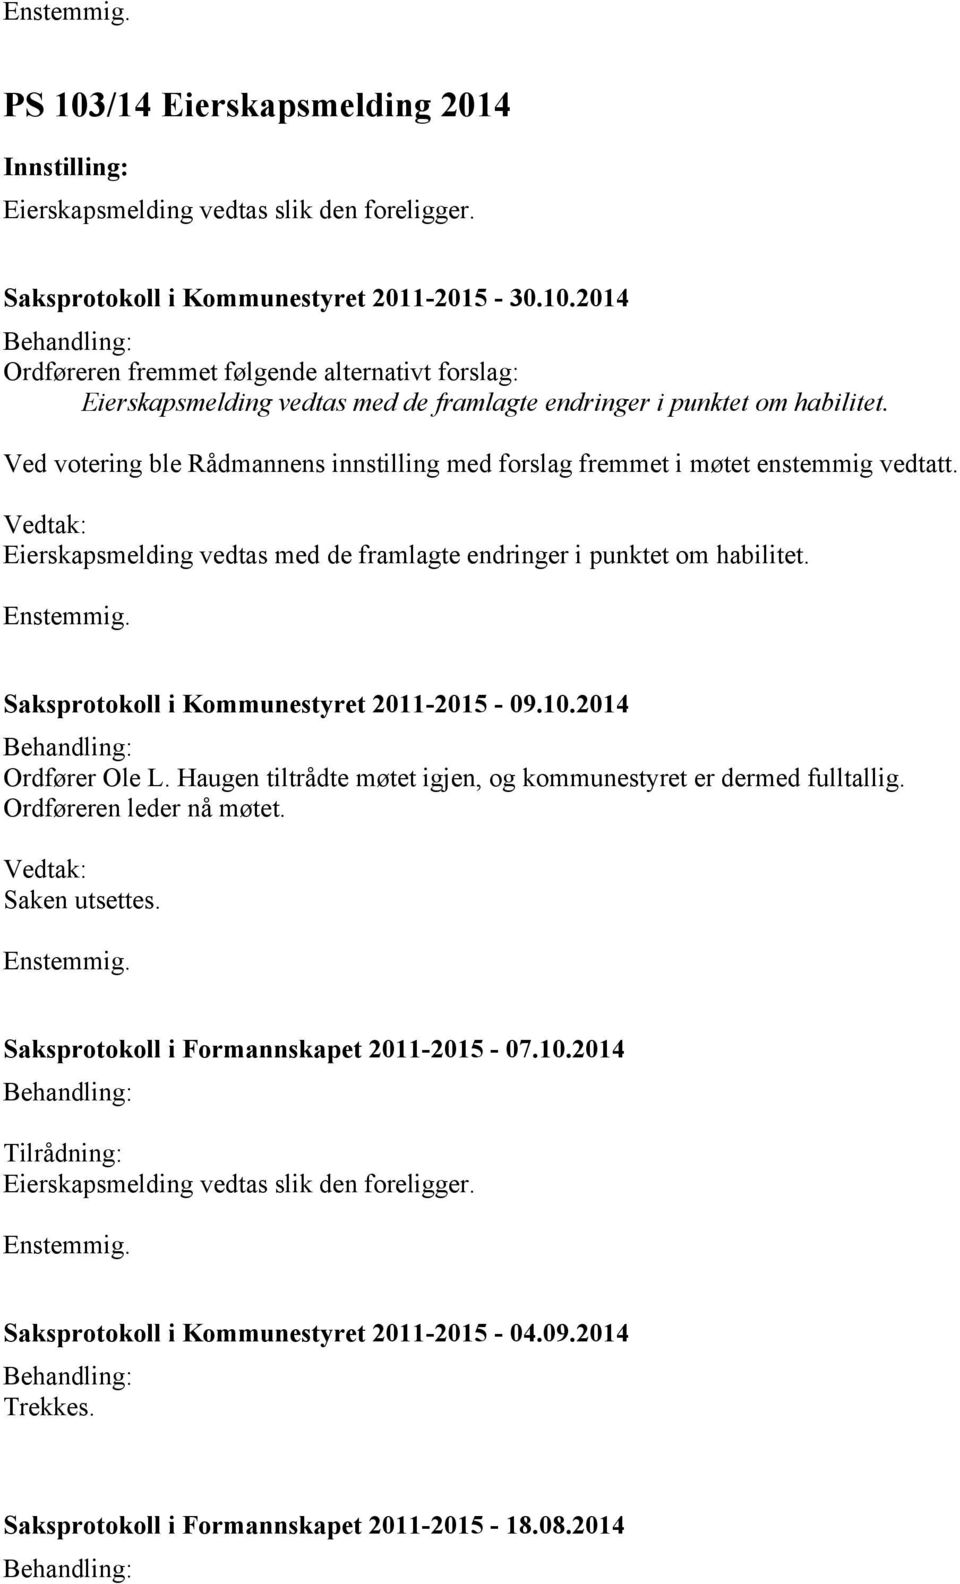 Saksprotokoll i Kommunestyret 2011-2015 - 09.10.2014 Ordfører Ole L. Haugen tiltrådte møtet igjen, og kommunestyret er dermed fulltallig. Ordføreren leder nå møtet. Saken utsettes.